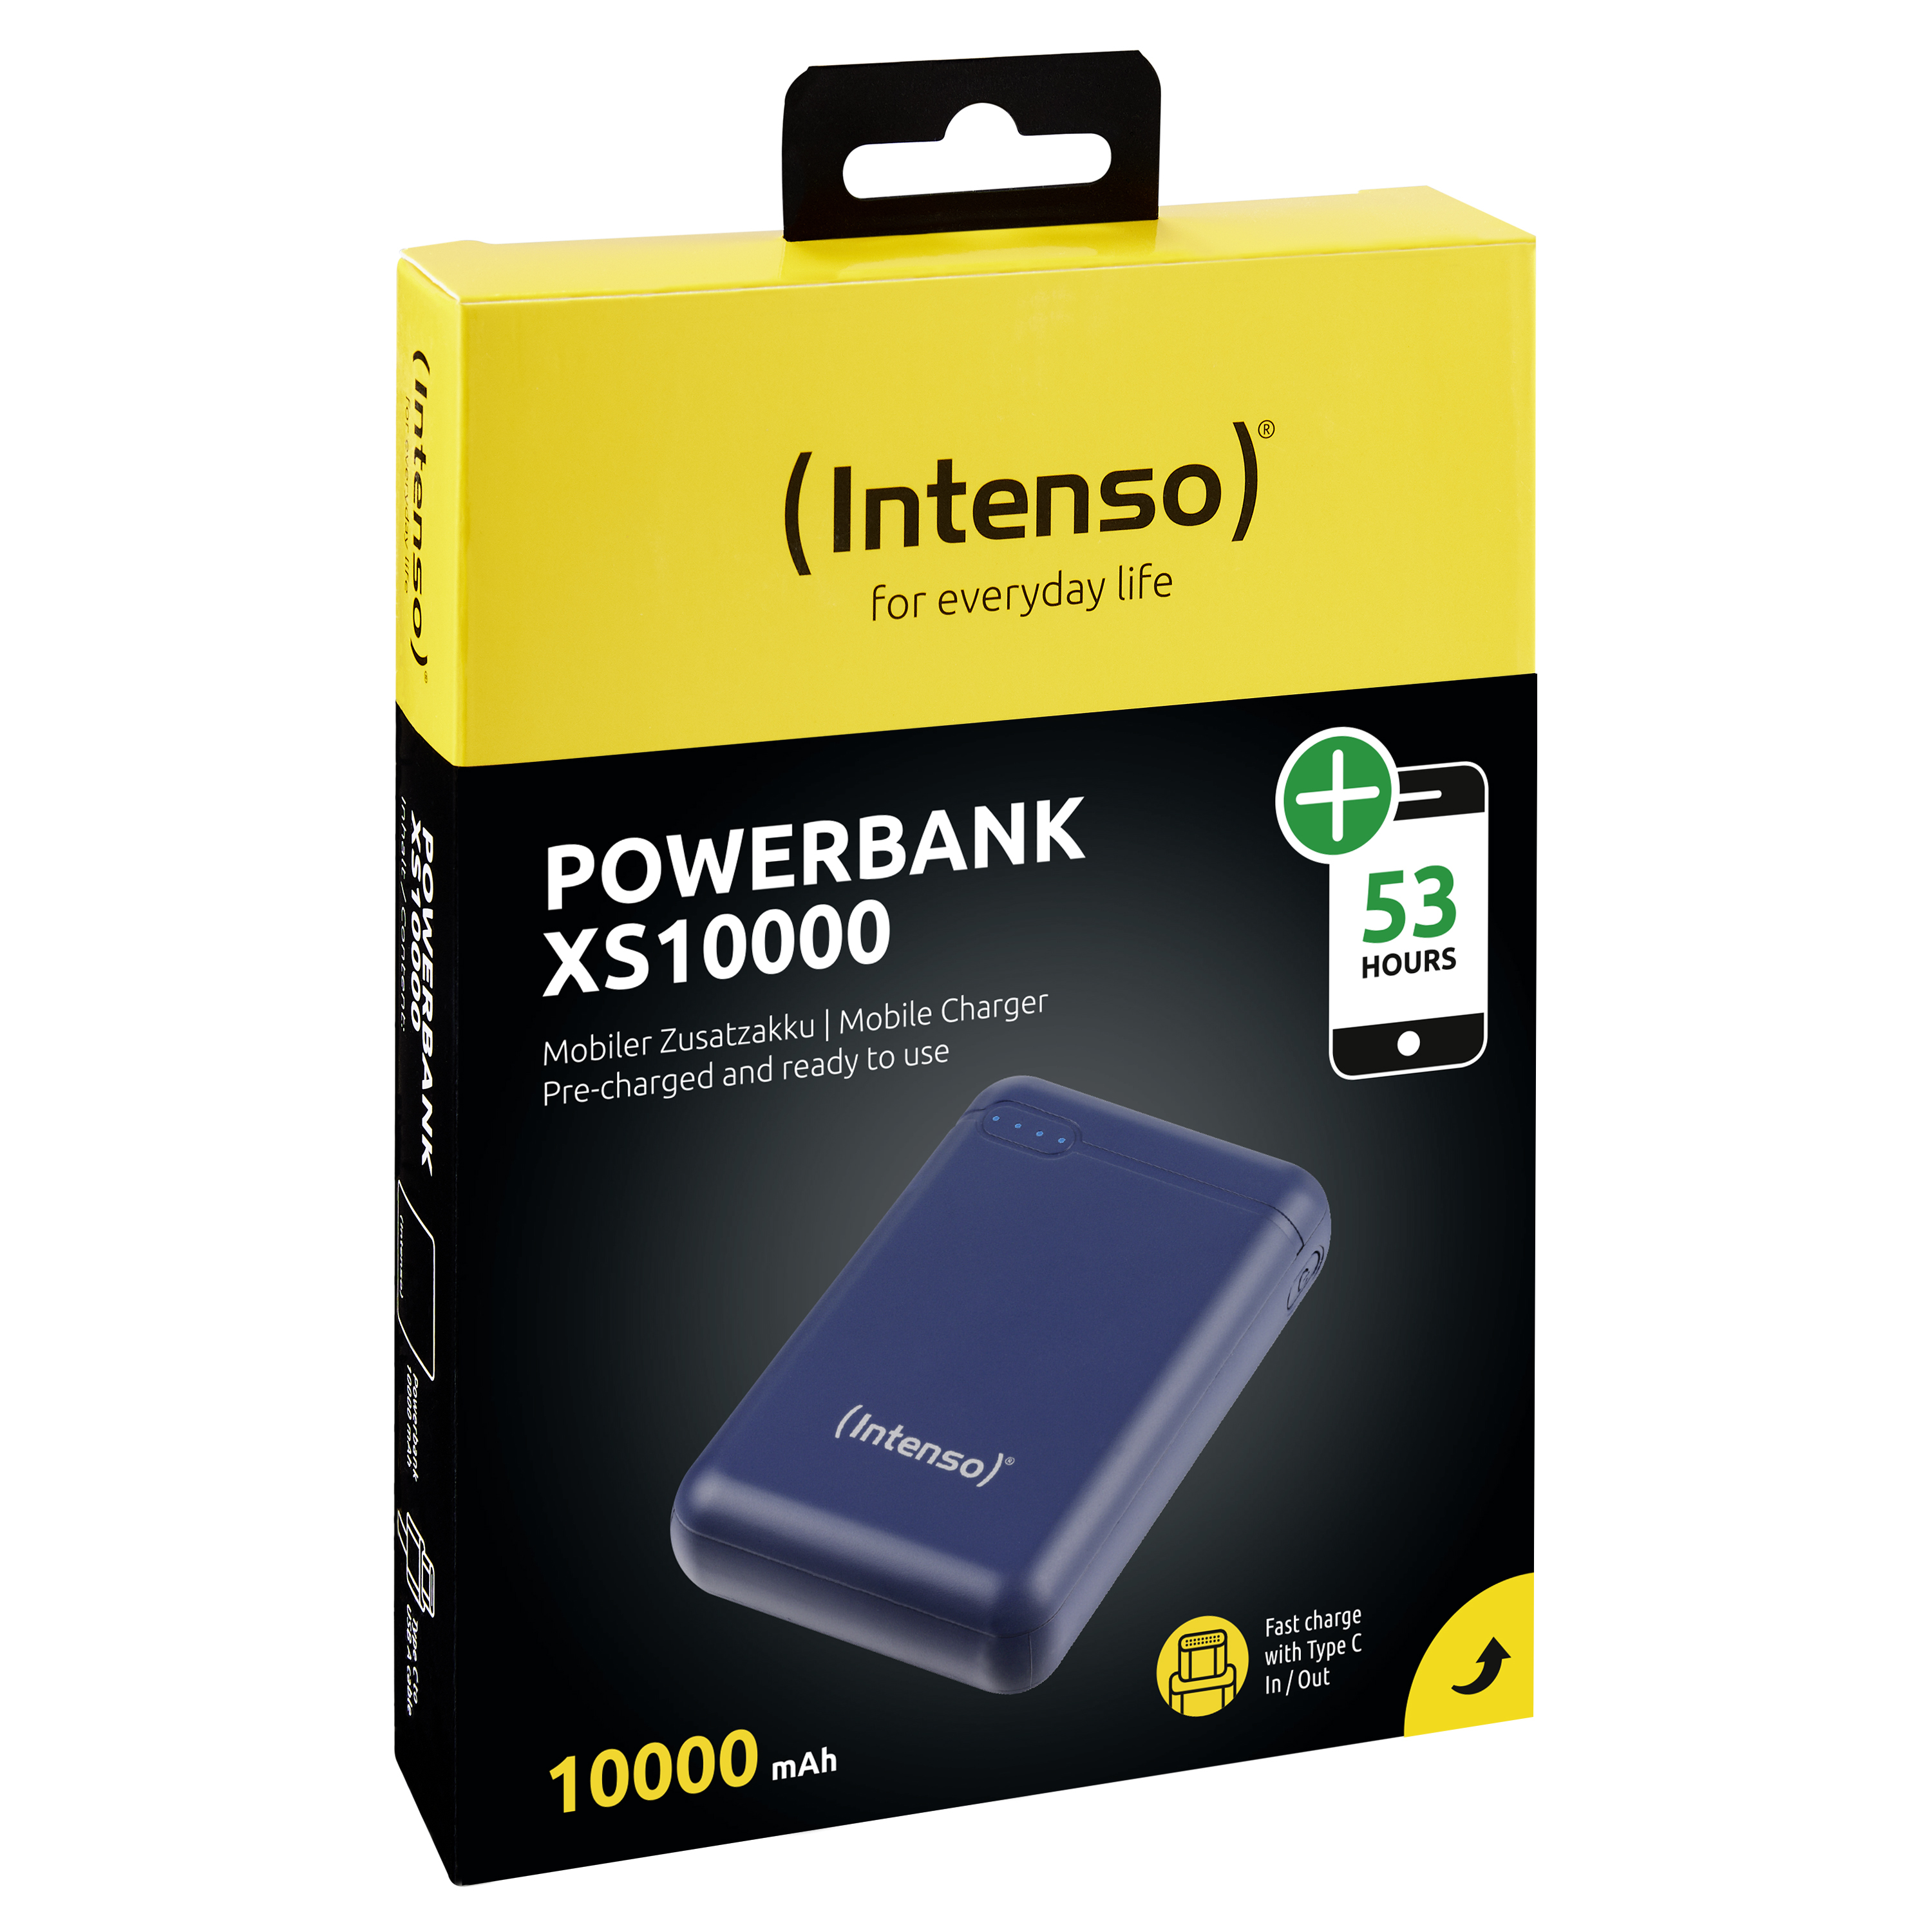 Intenso XS10000 - Powerbank - 10000 mAh - 3.1 A - 2 Ausgabeanschlussstellen (USB, USB-C)